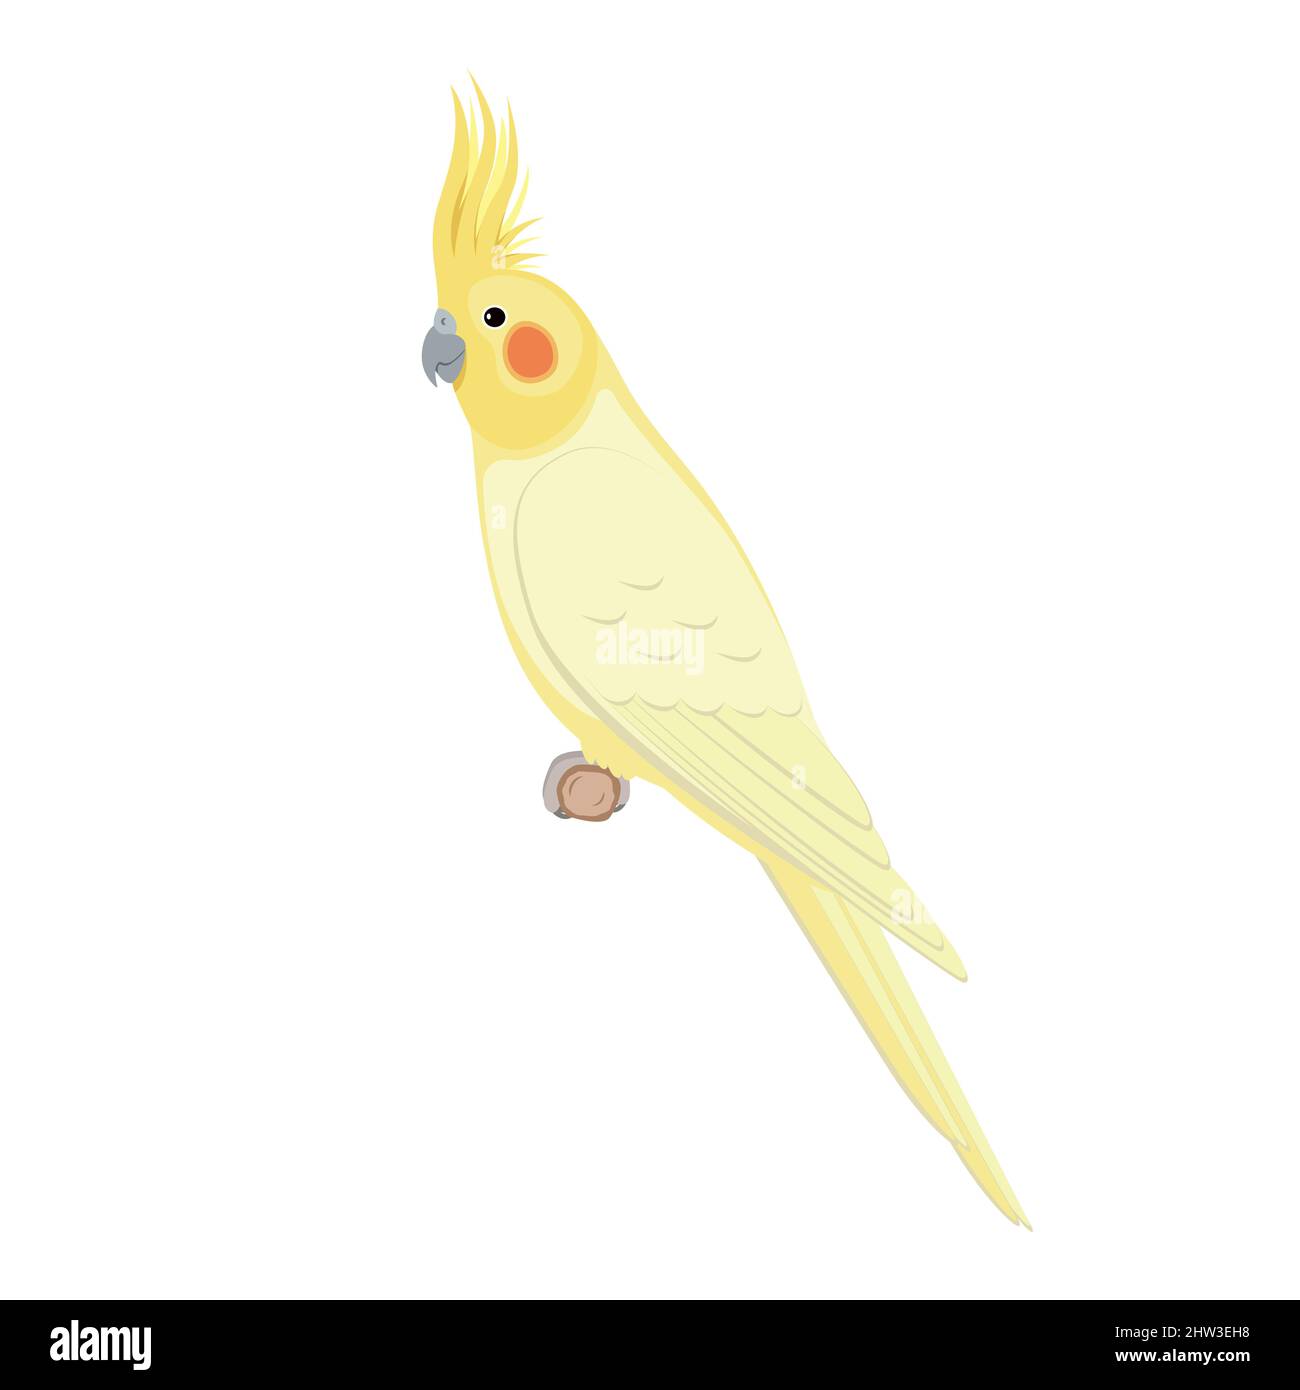 Uccello cockatiel seduto su un ramo. Illustrazione vettoriale di pappagallo cockatiel seduto su un ramo isolato su sfondo bianco. Vista laterale, profilo. Illustrazione Vettoriale